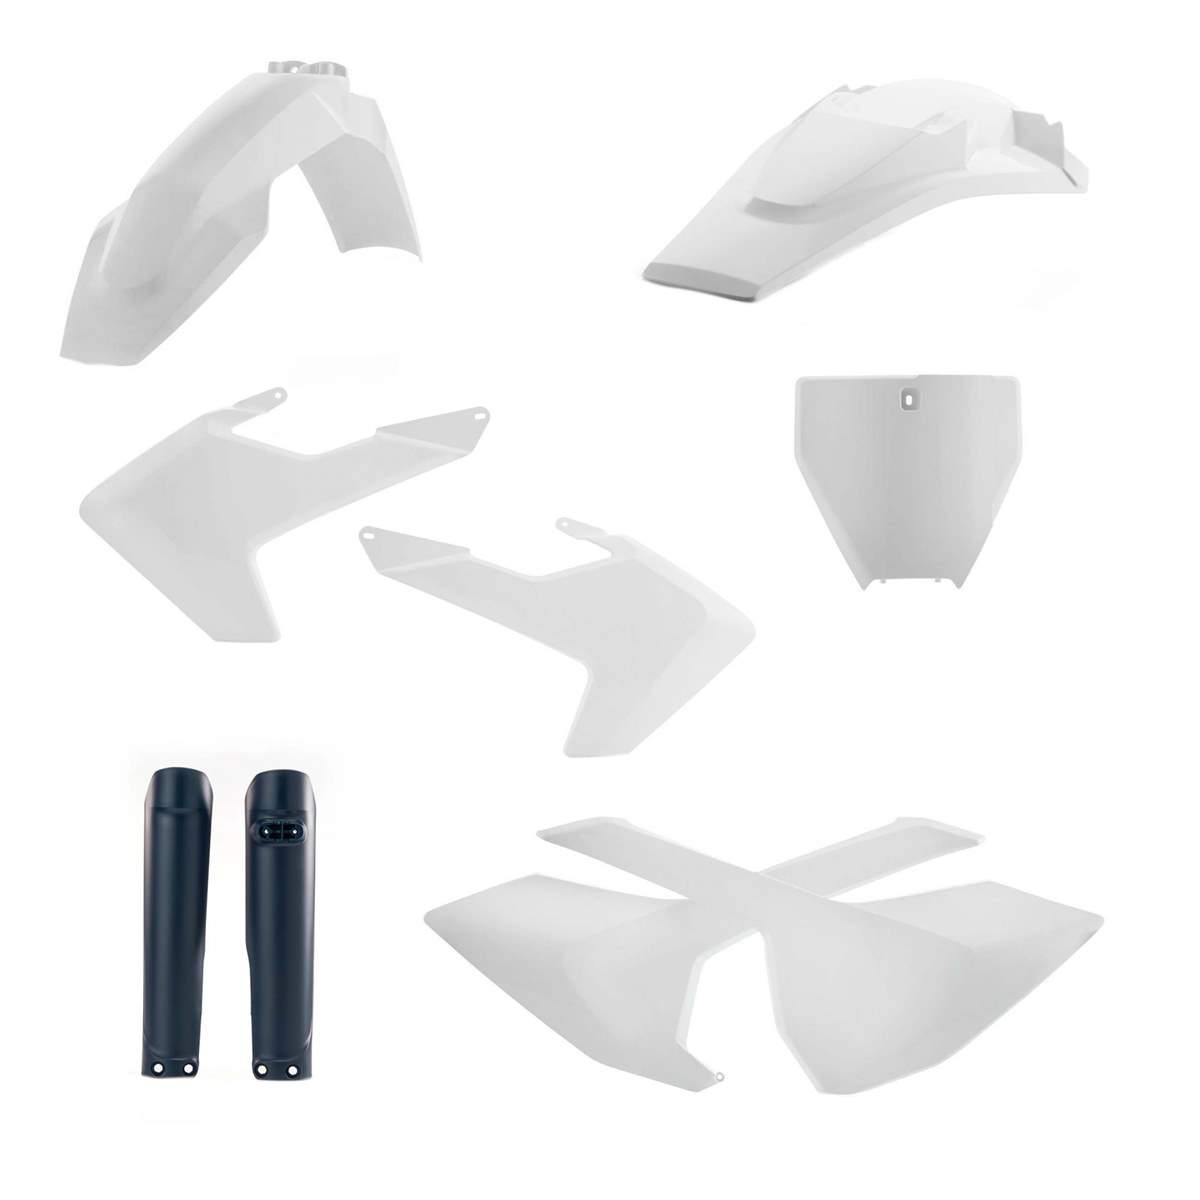 Acerbis Plastik-Kit Full-Kit Husqvarna TC 125/250, FC 250/350/450 16-18, Replica 17